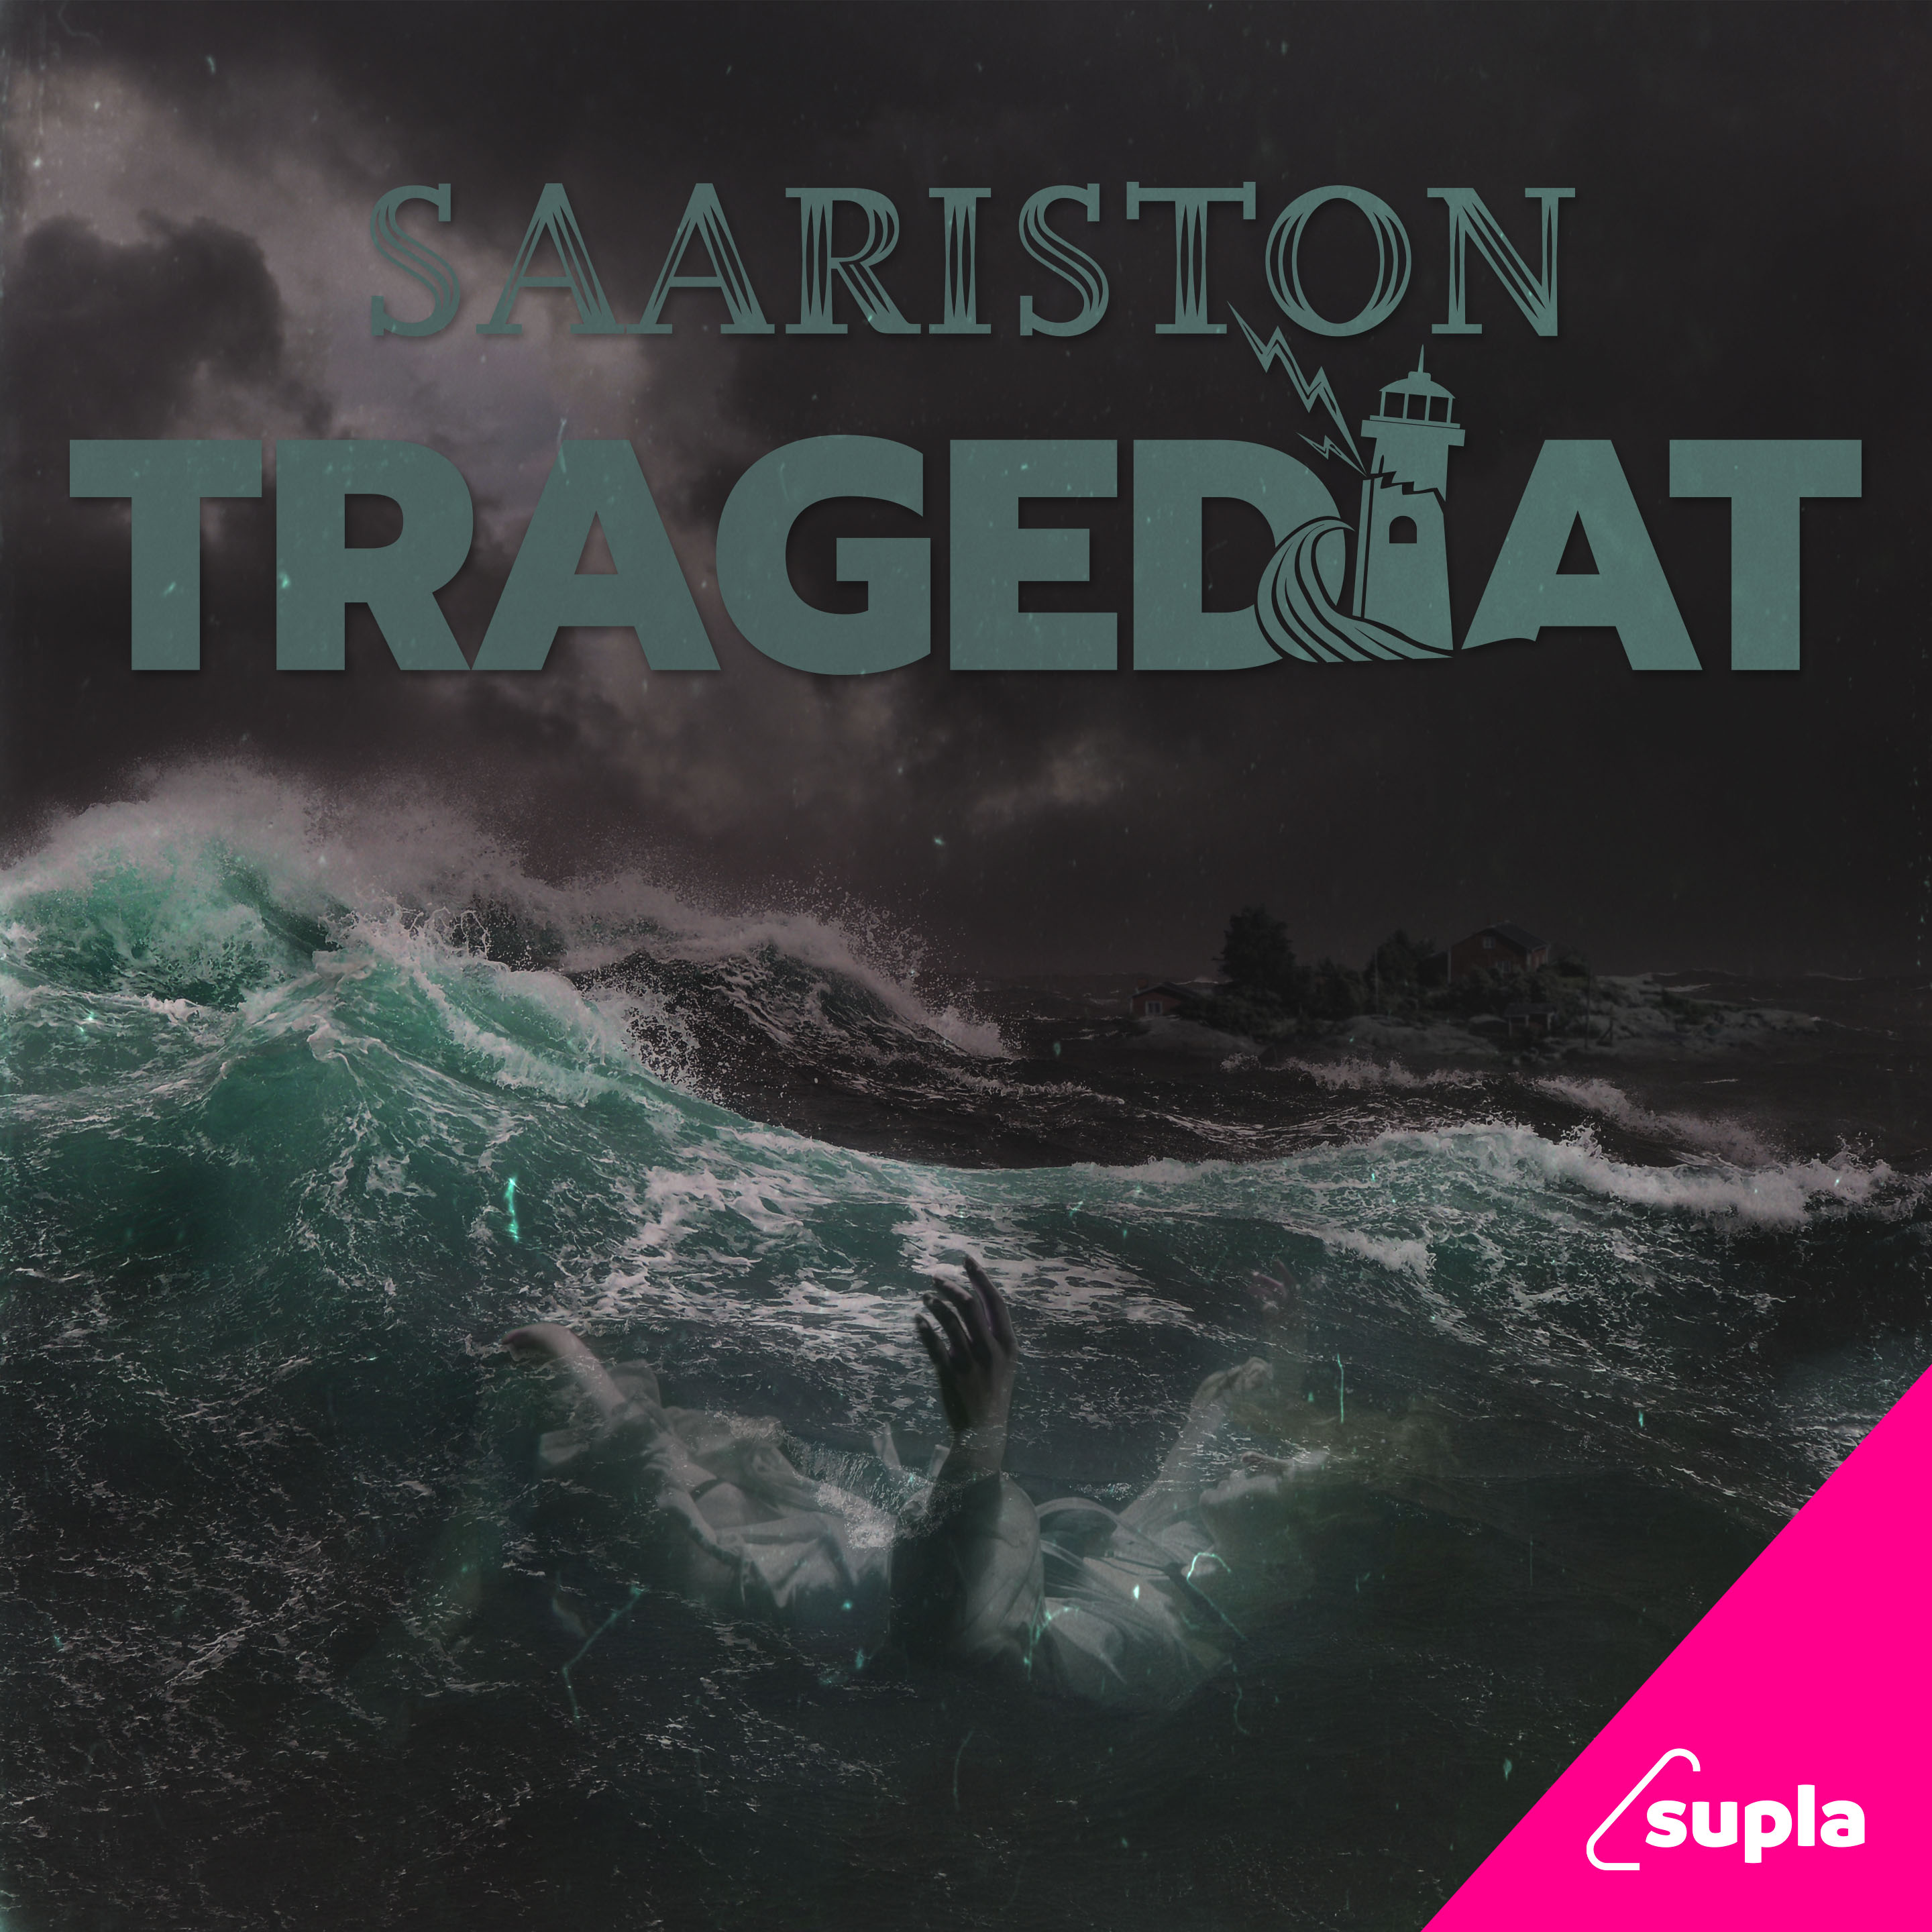 Saariston tragediat - podcast